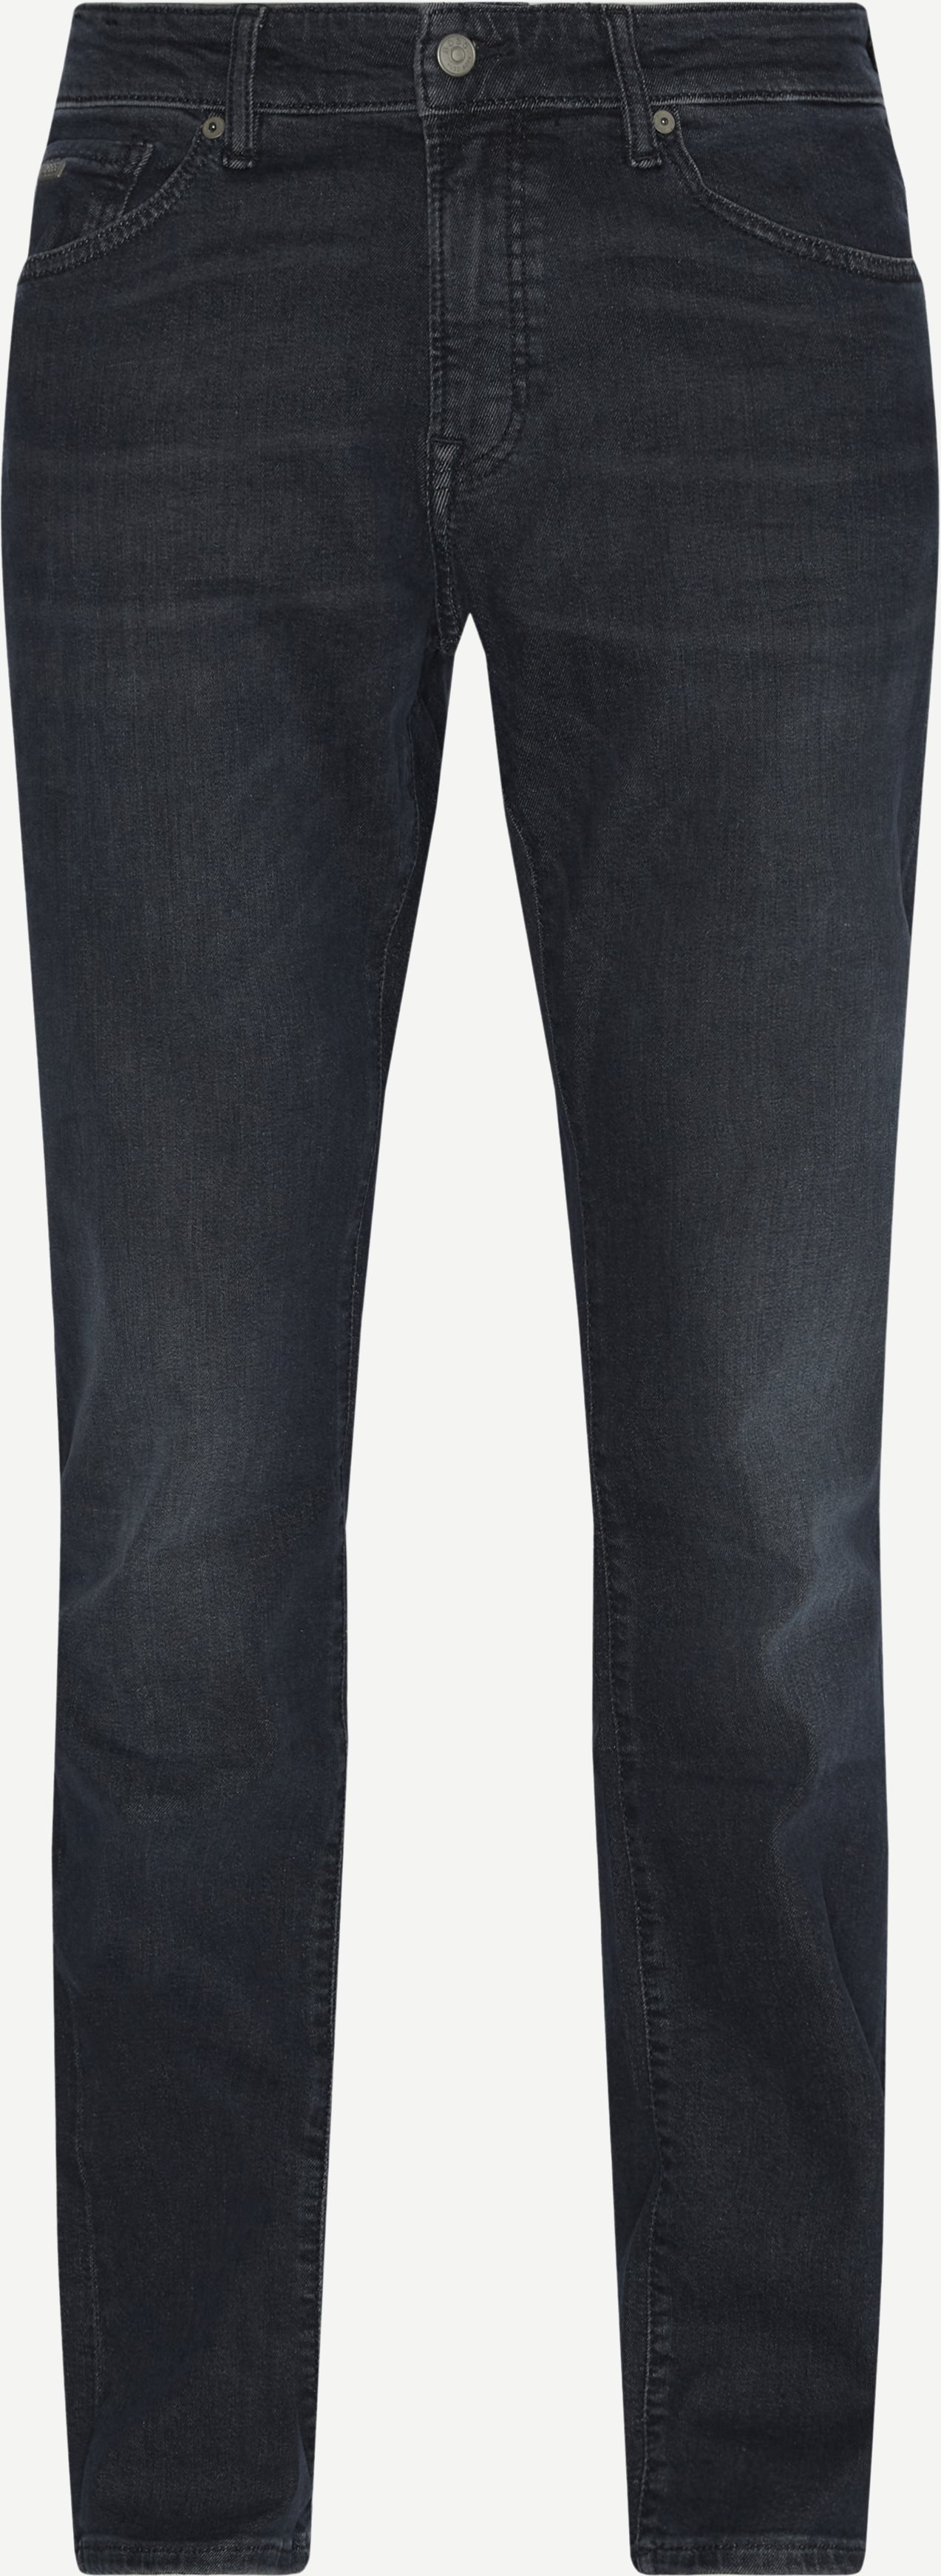 Maine-Jeans - Jeans - Regular fit - Jeans-Blau